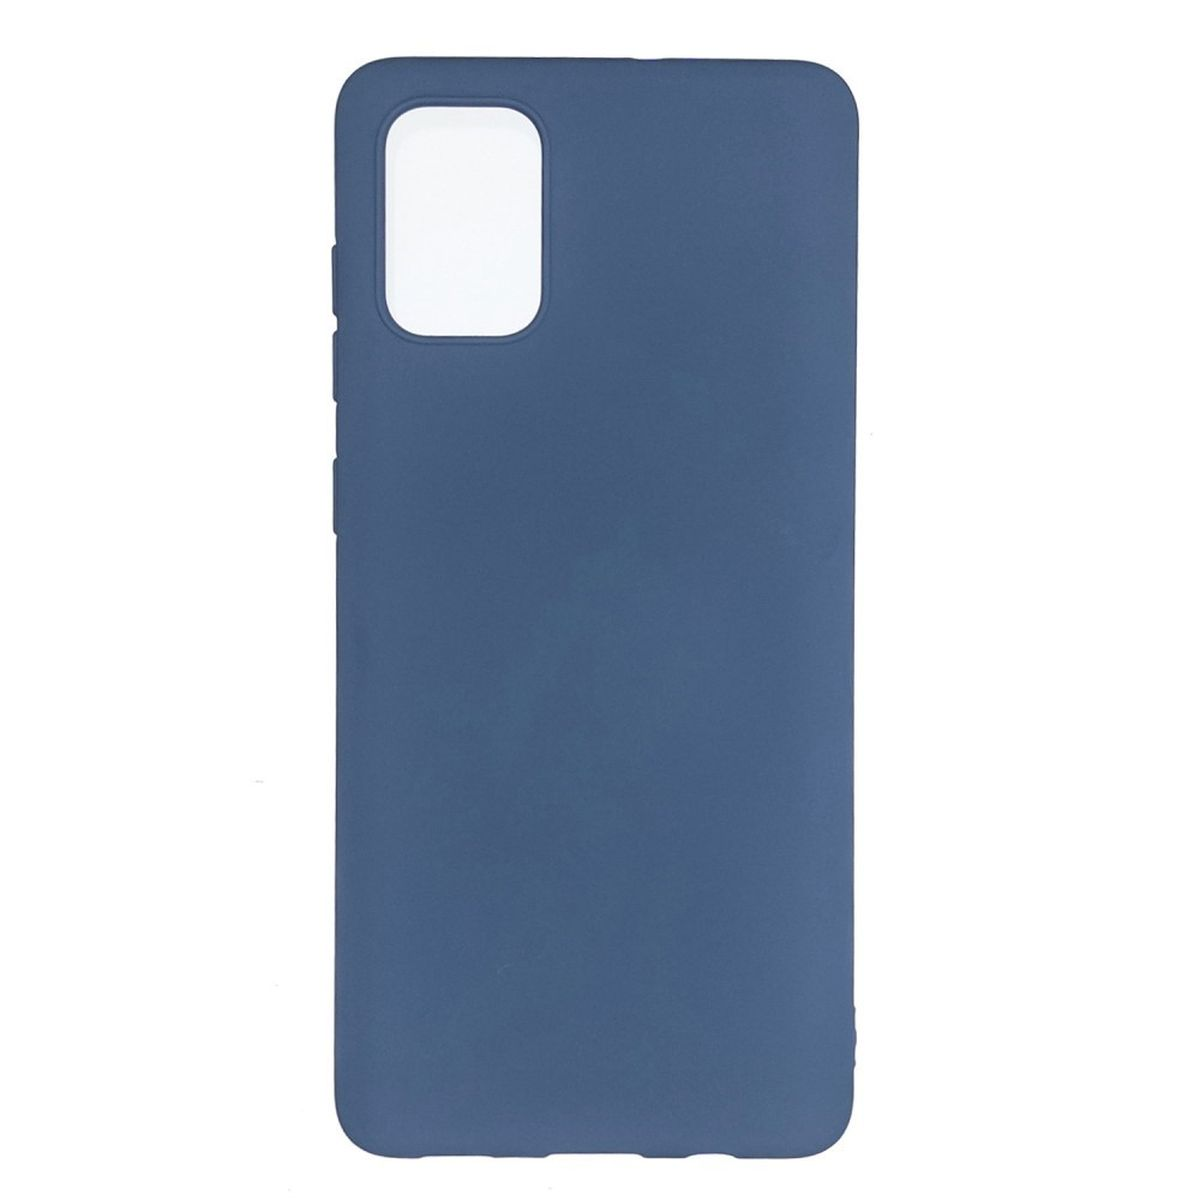 COVERKINGZ A51, Blau aus Silikon, Backcover, Galaxy Handycase Samsung,